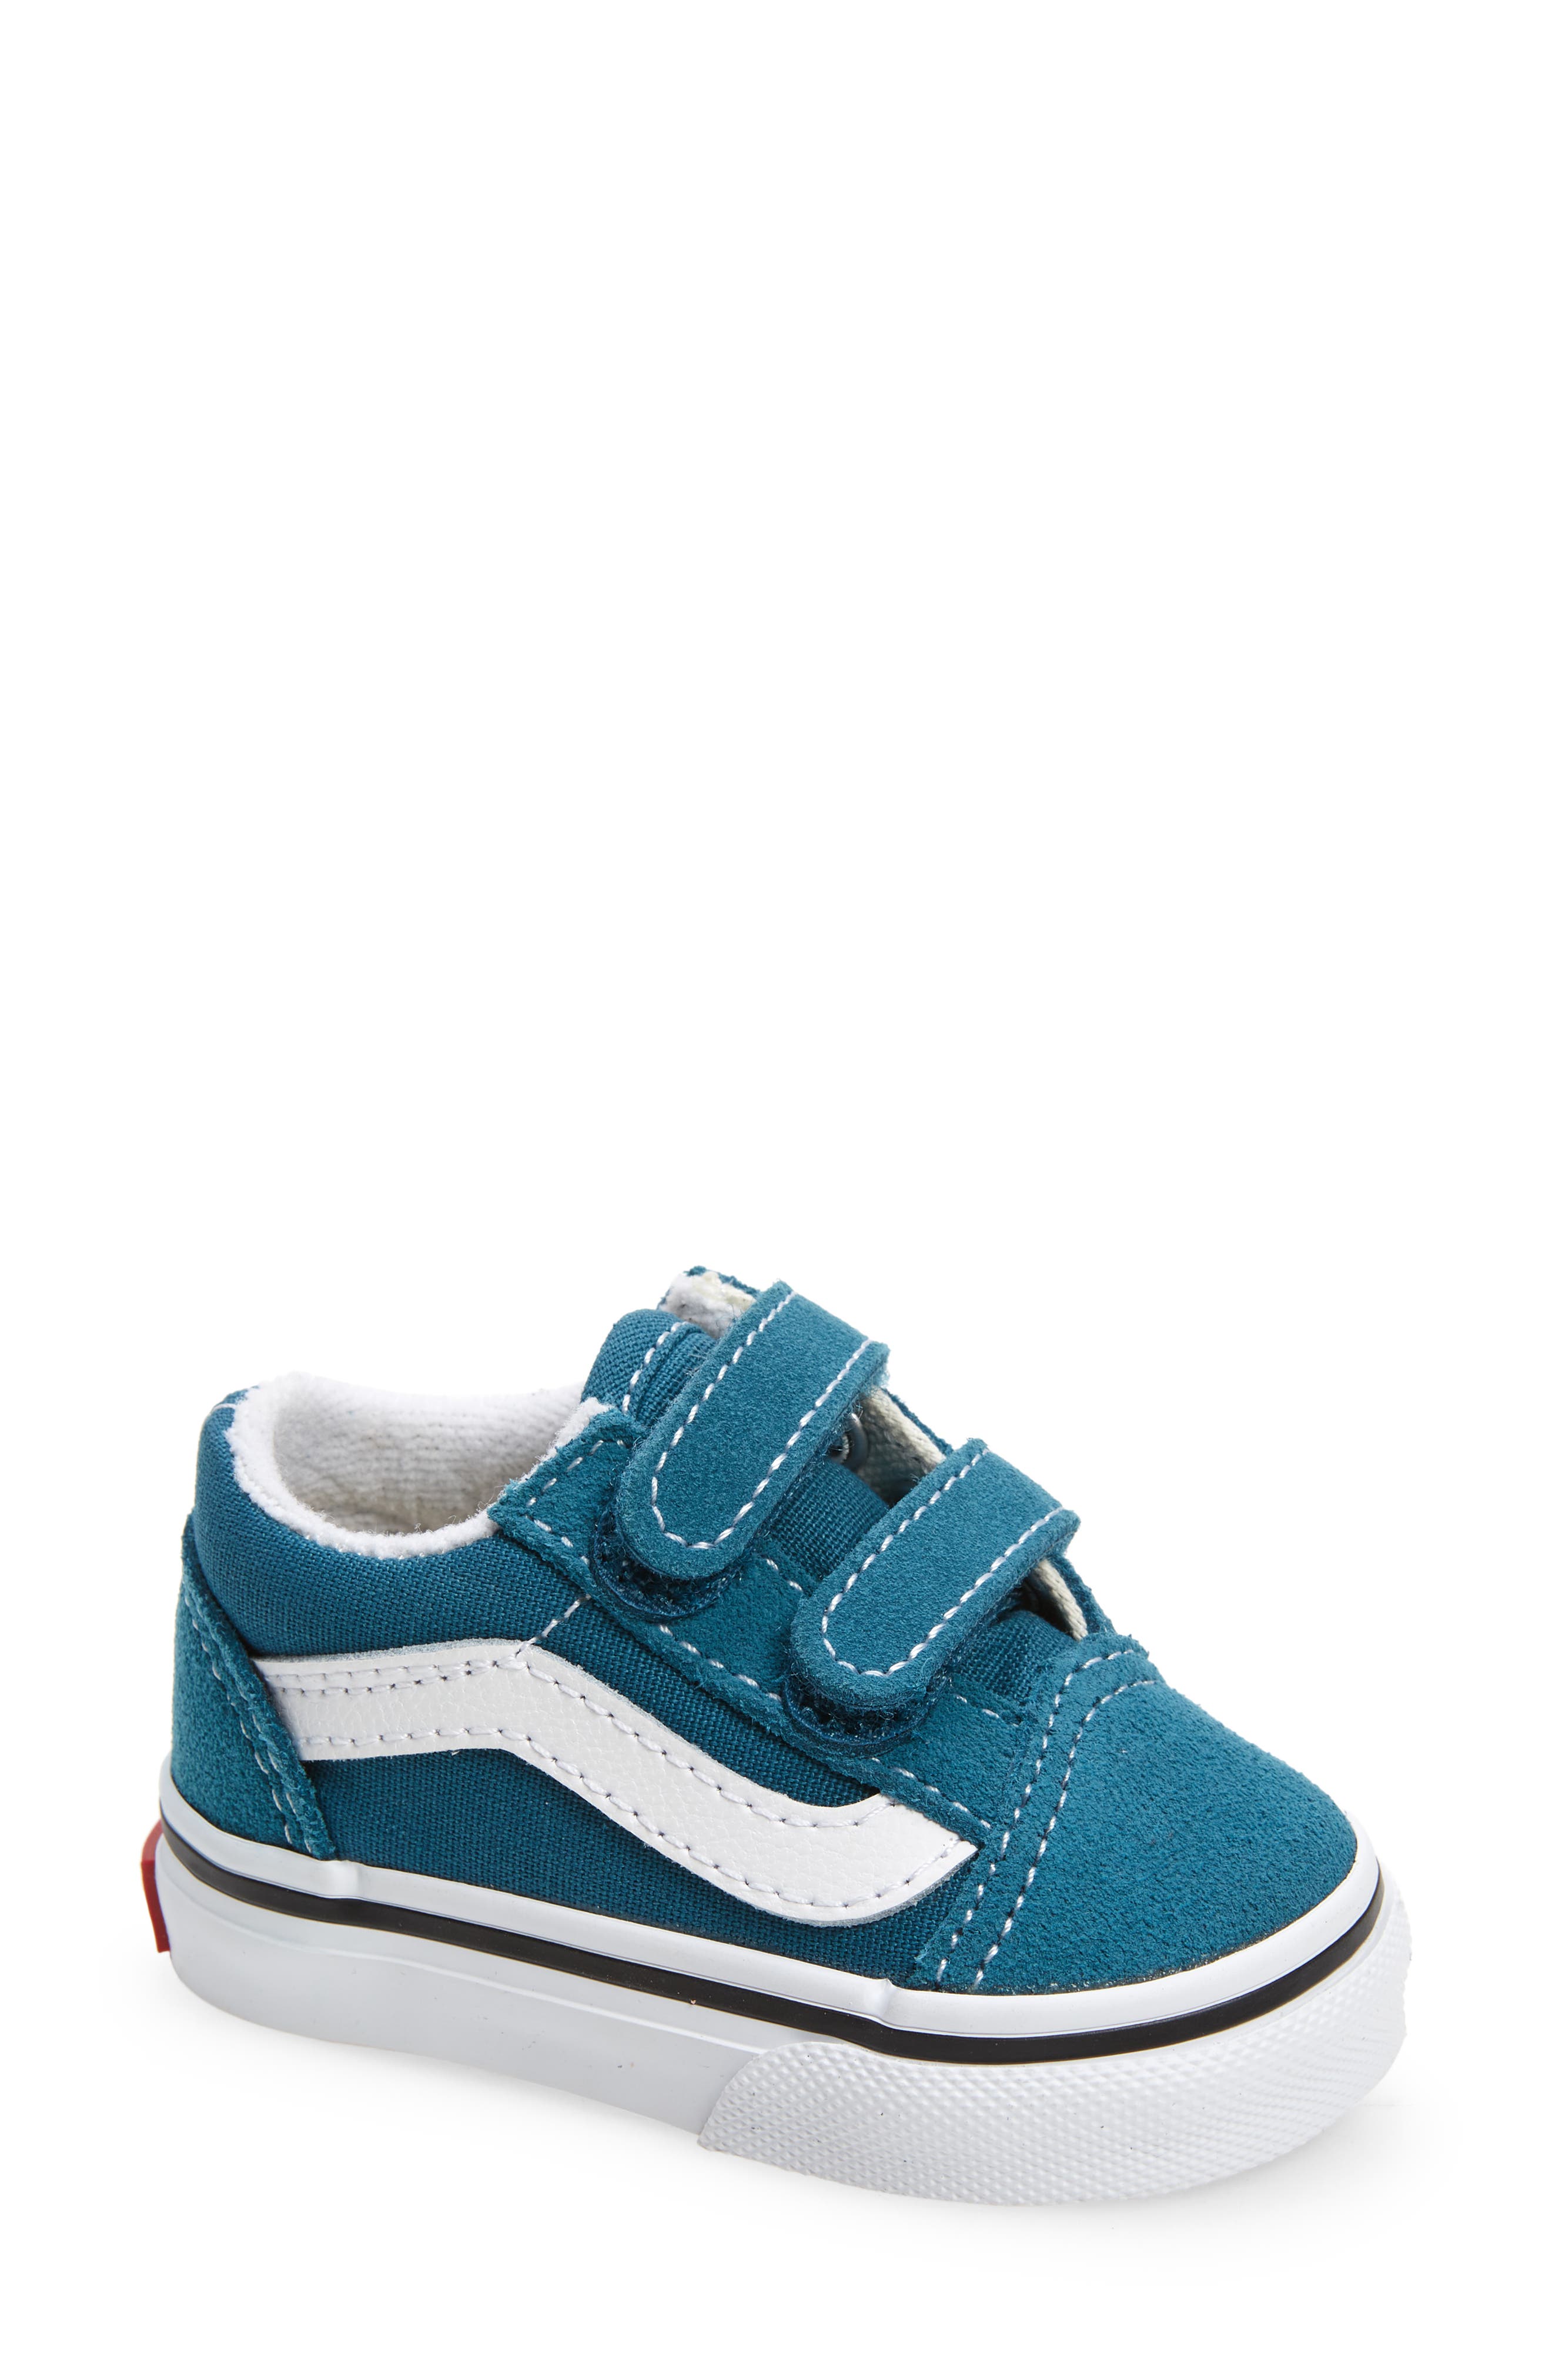 newborn van shoes